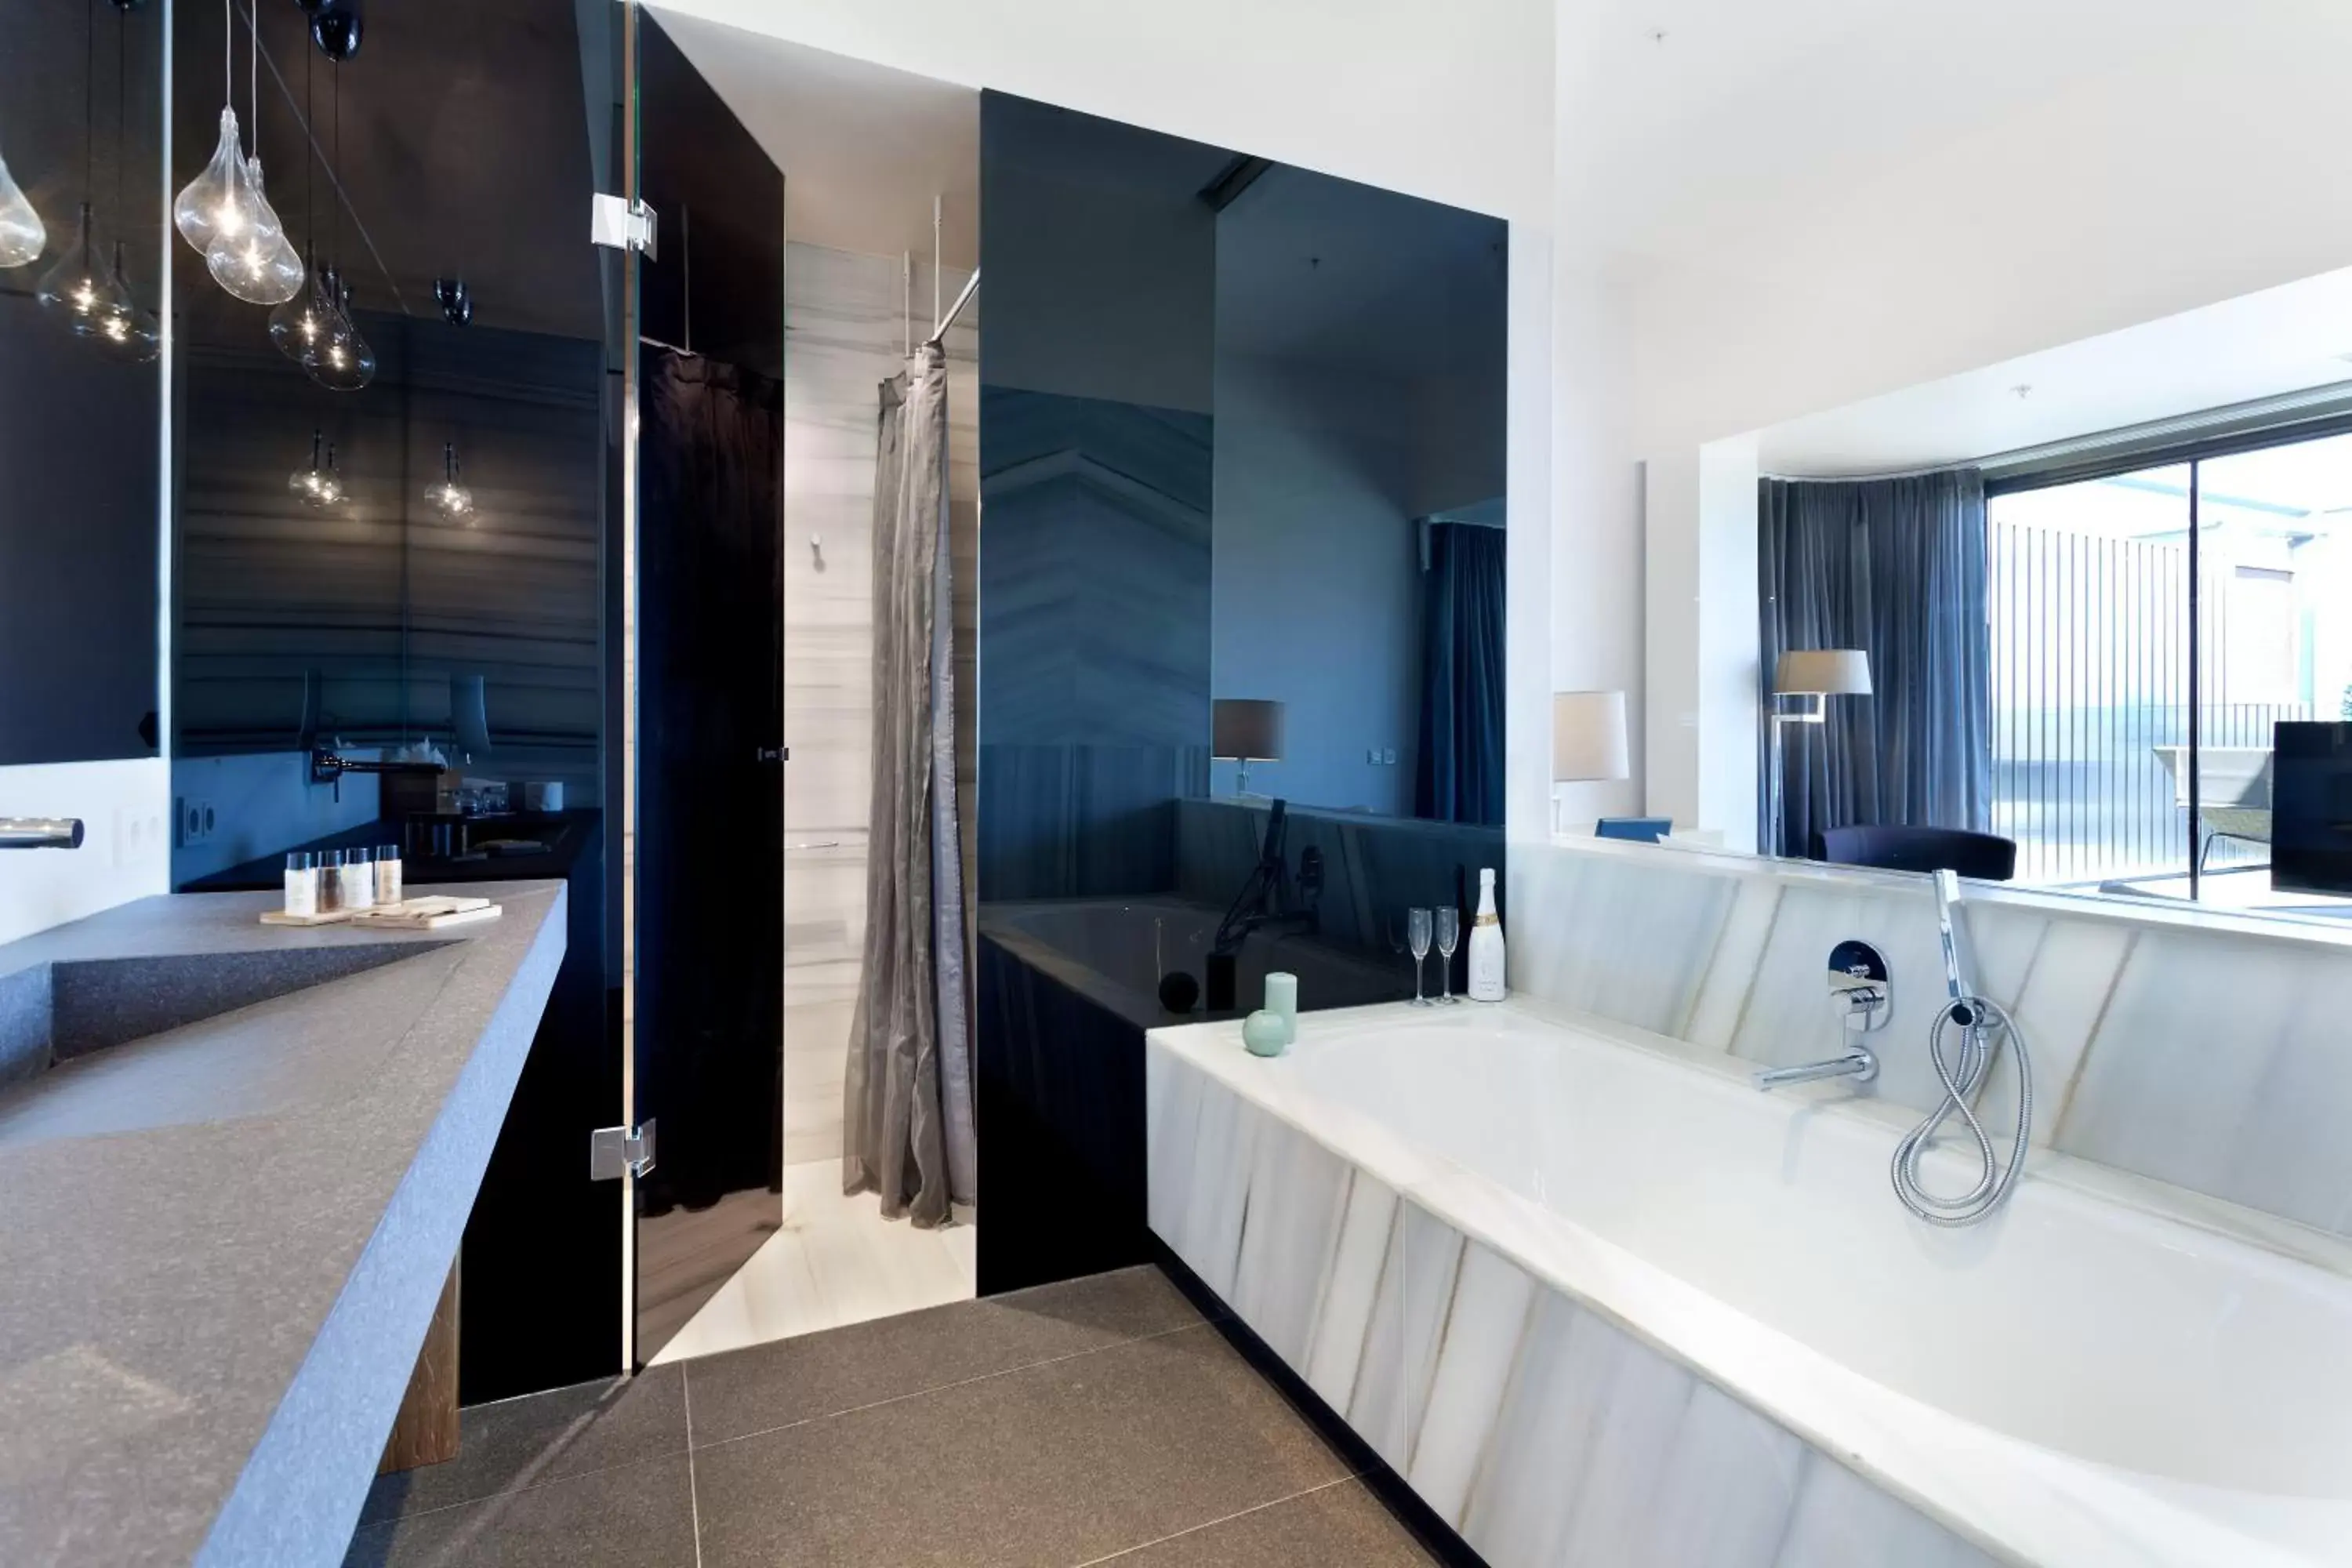 Photo of the whole room, Bathroom in Hotel Royal Passeig de Gracia